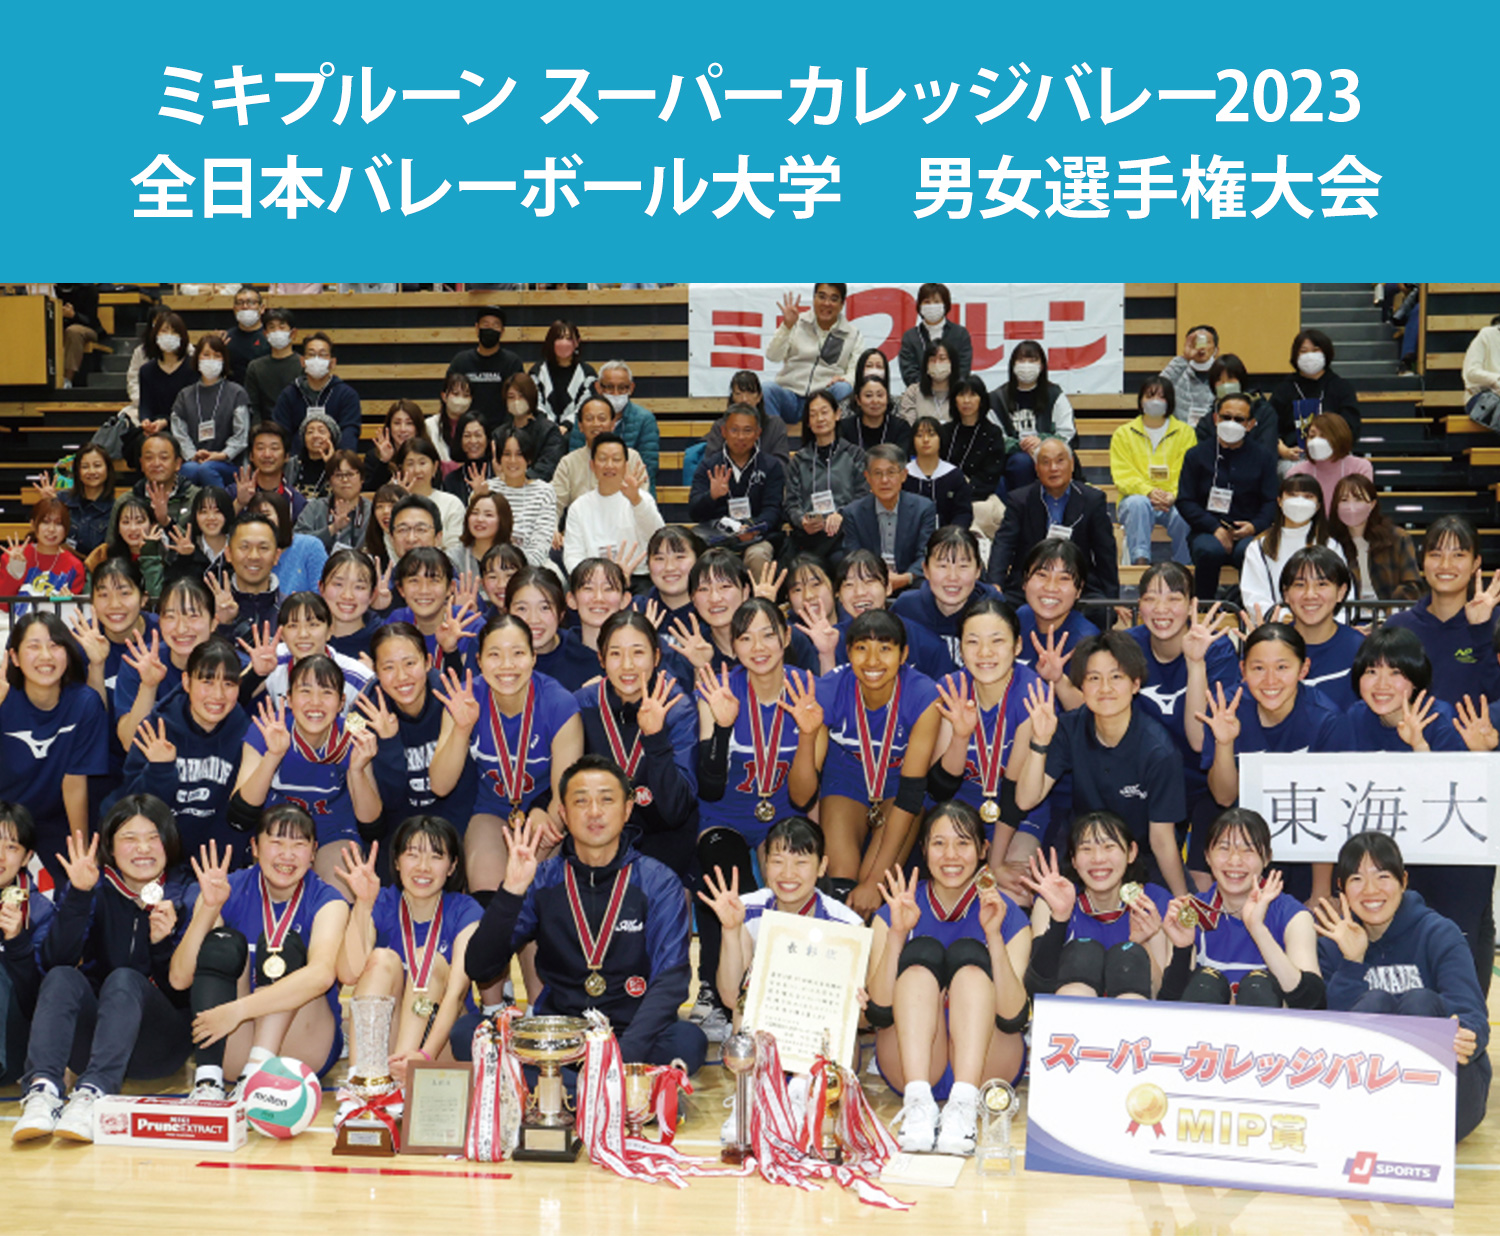 ミキプルーン スーパーカレッジバレー2023 全日本バレーボール大学　男女選手権大会